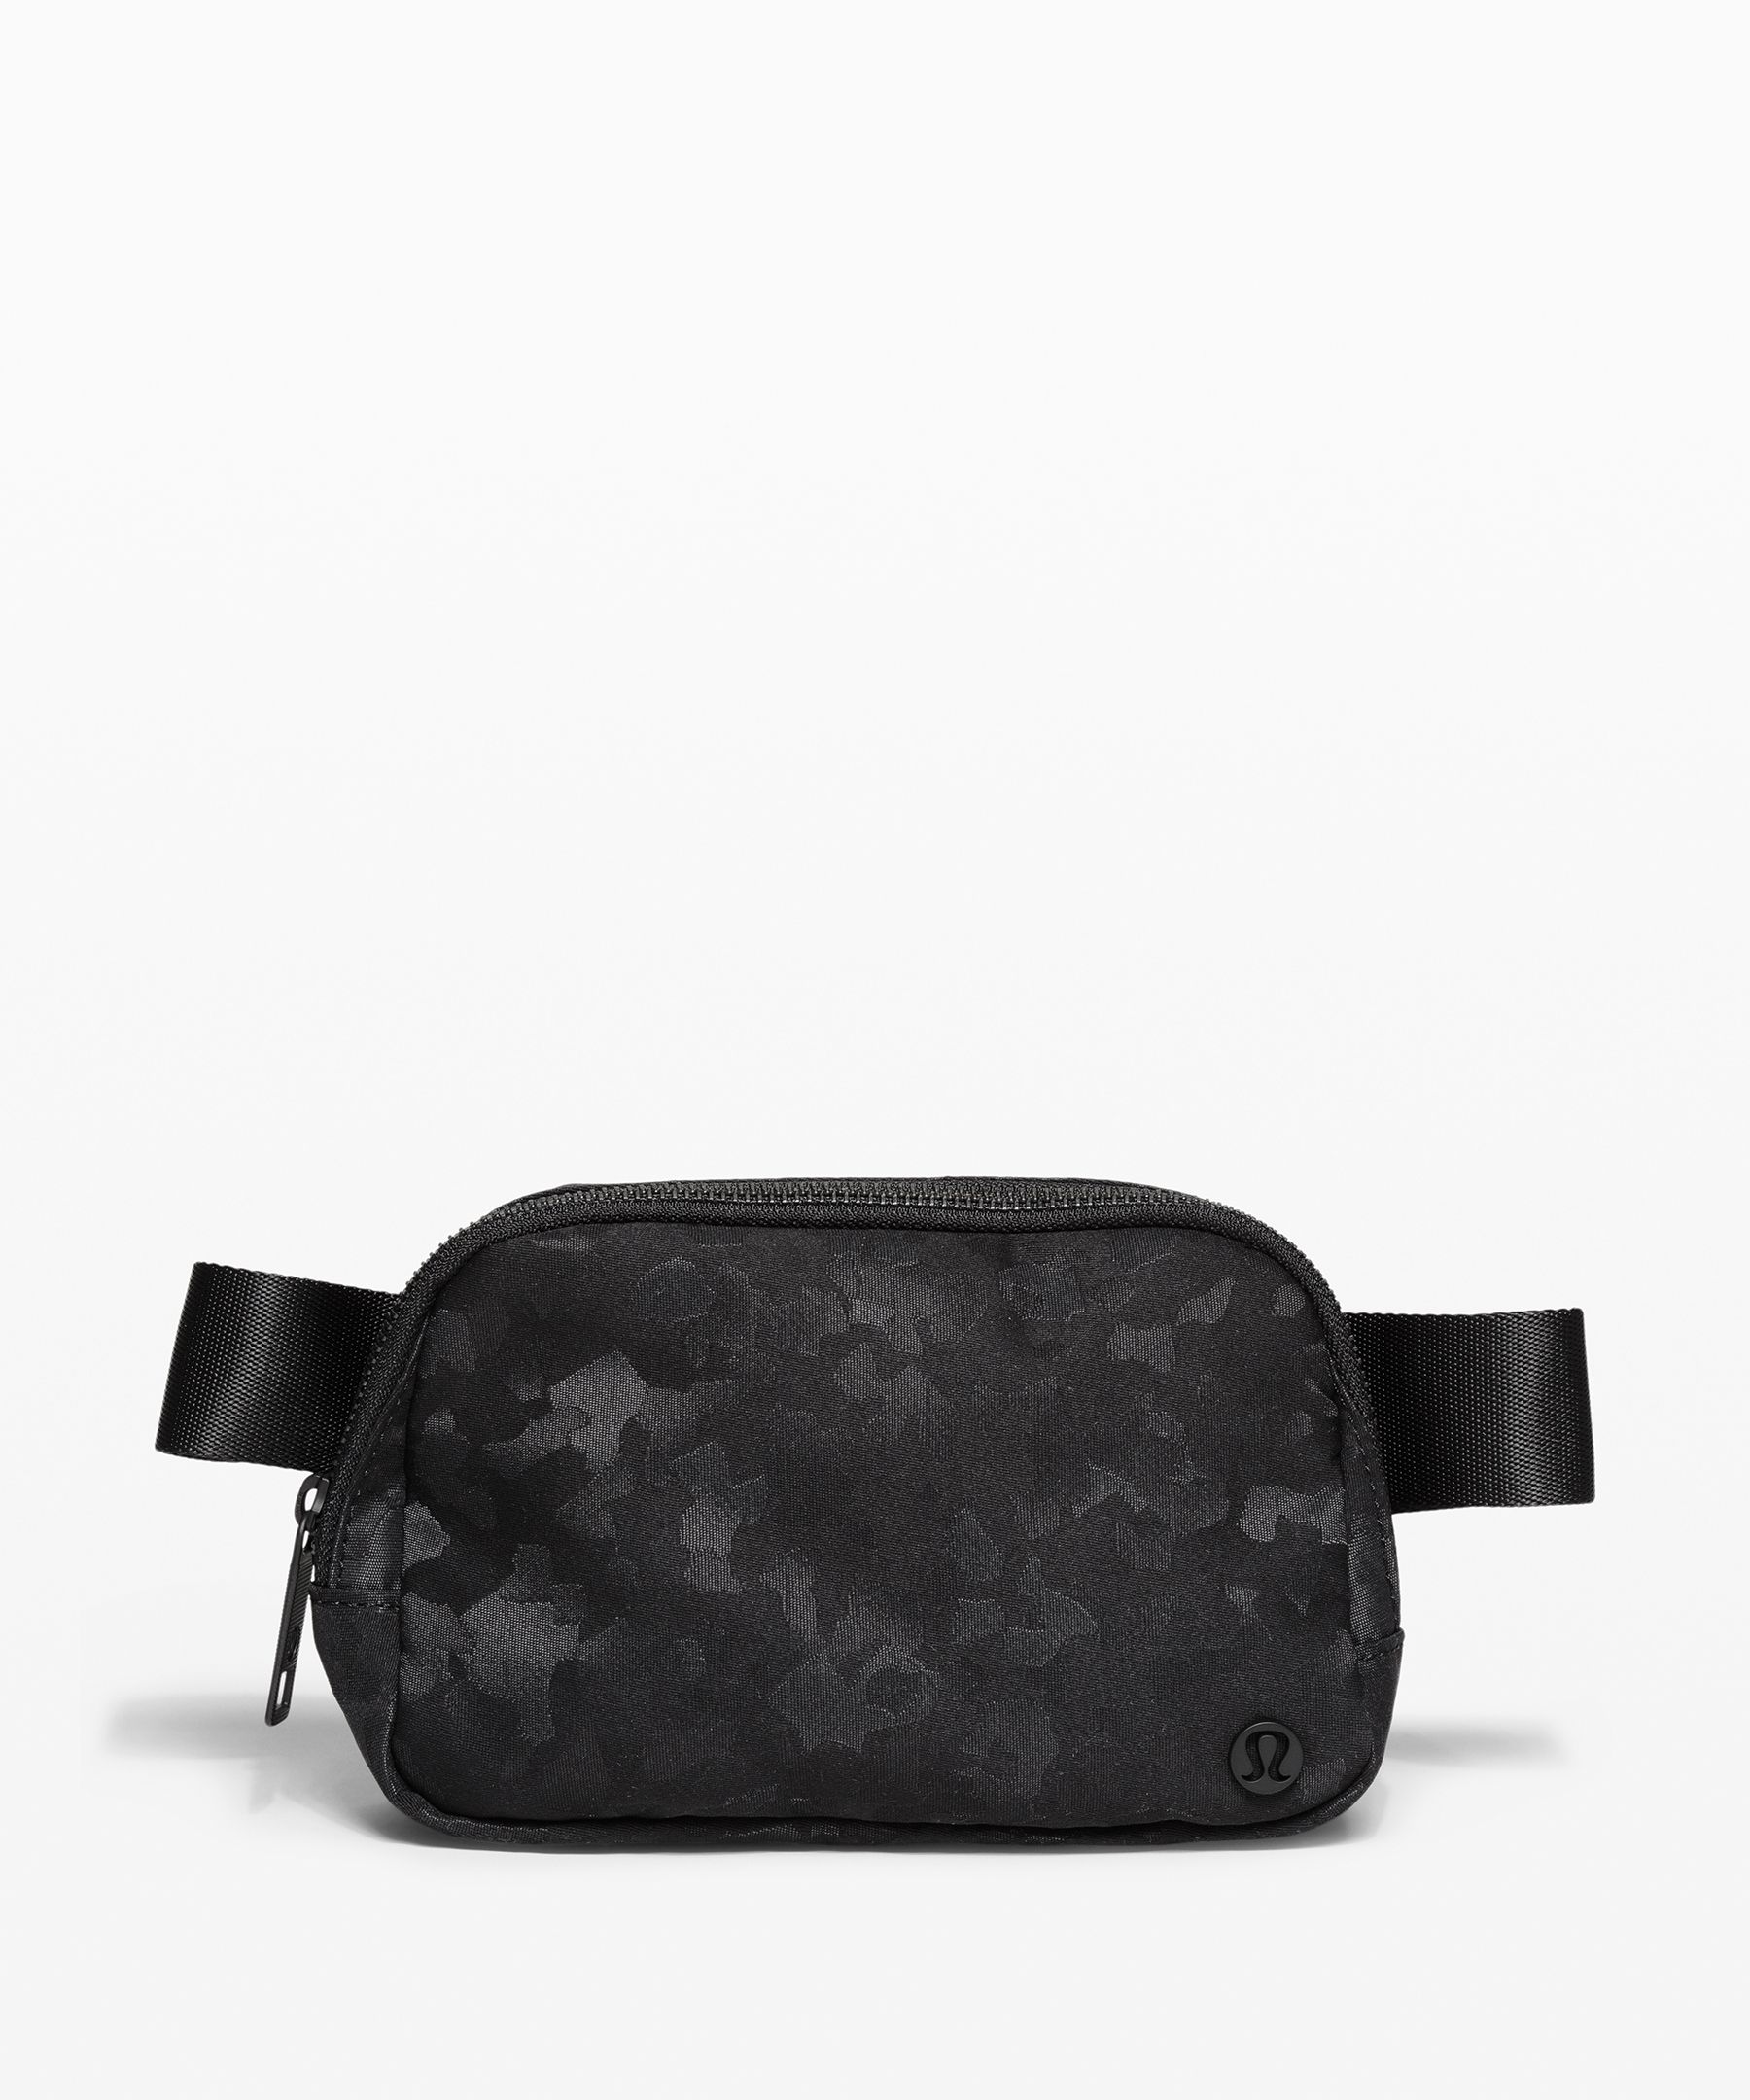 New Lululemon Everywhere Belt Bag -Extended Strap- Black & White Lululemon  Print